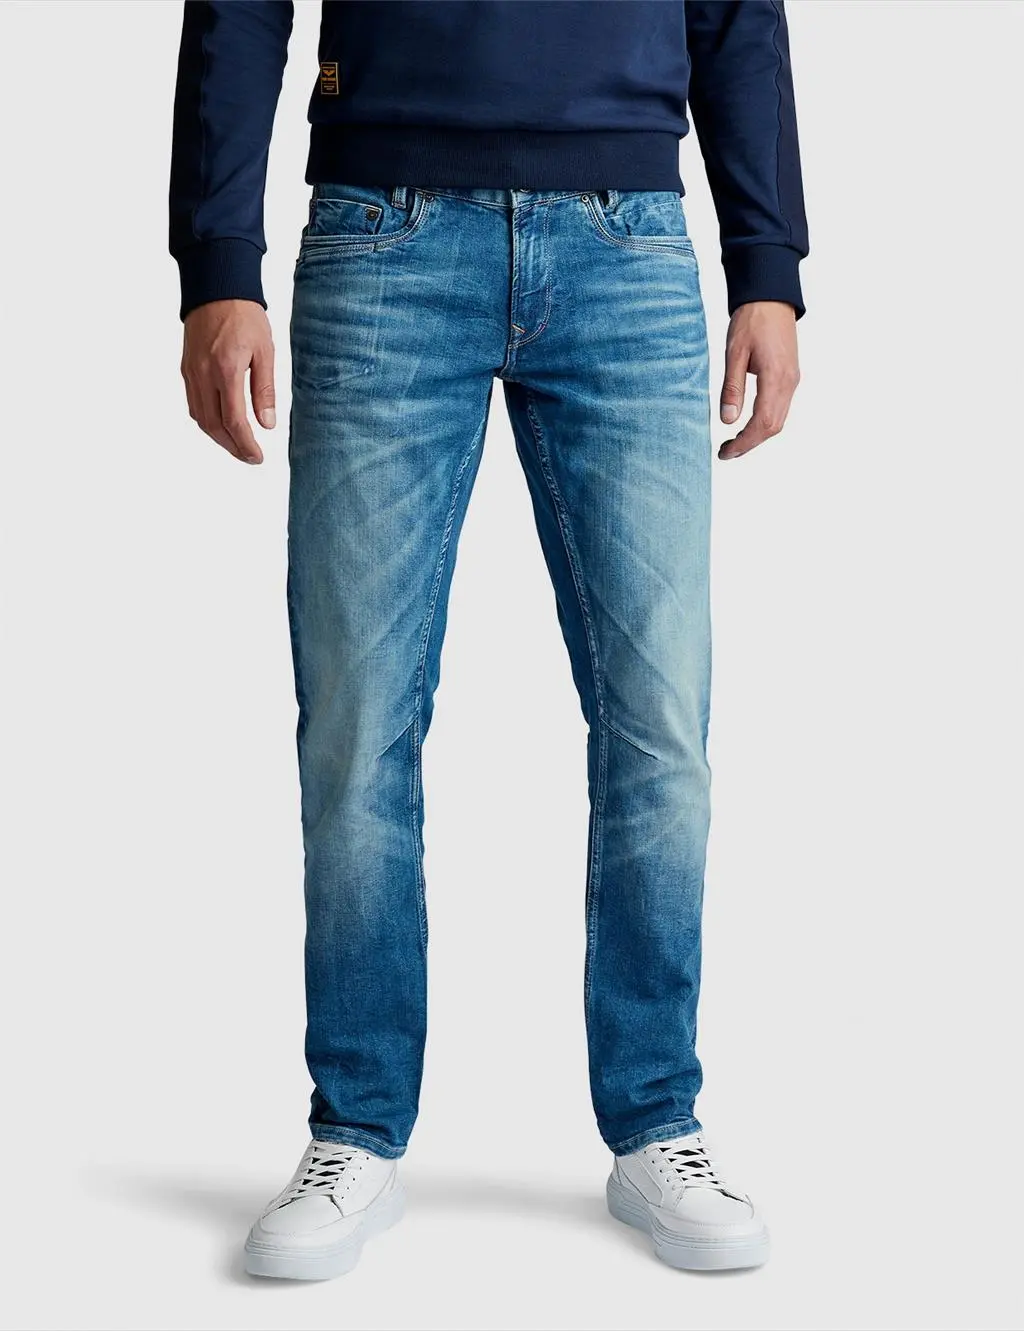 Nieuwsgierigheid Spuug uit Leeg de prullenbak pme legend heren jeans | Smit mode